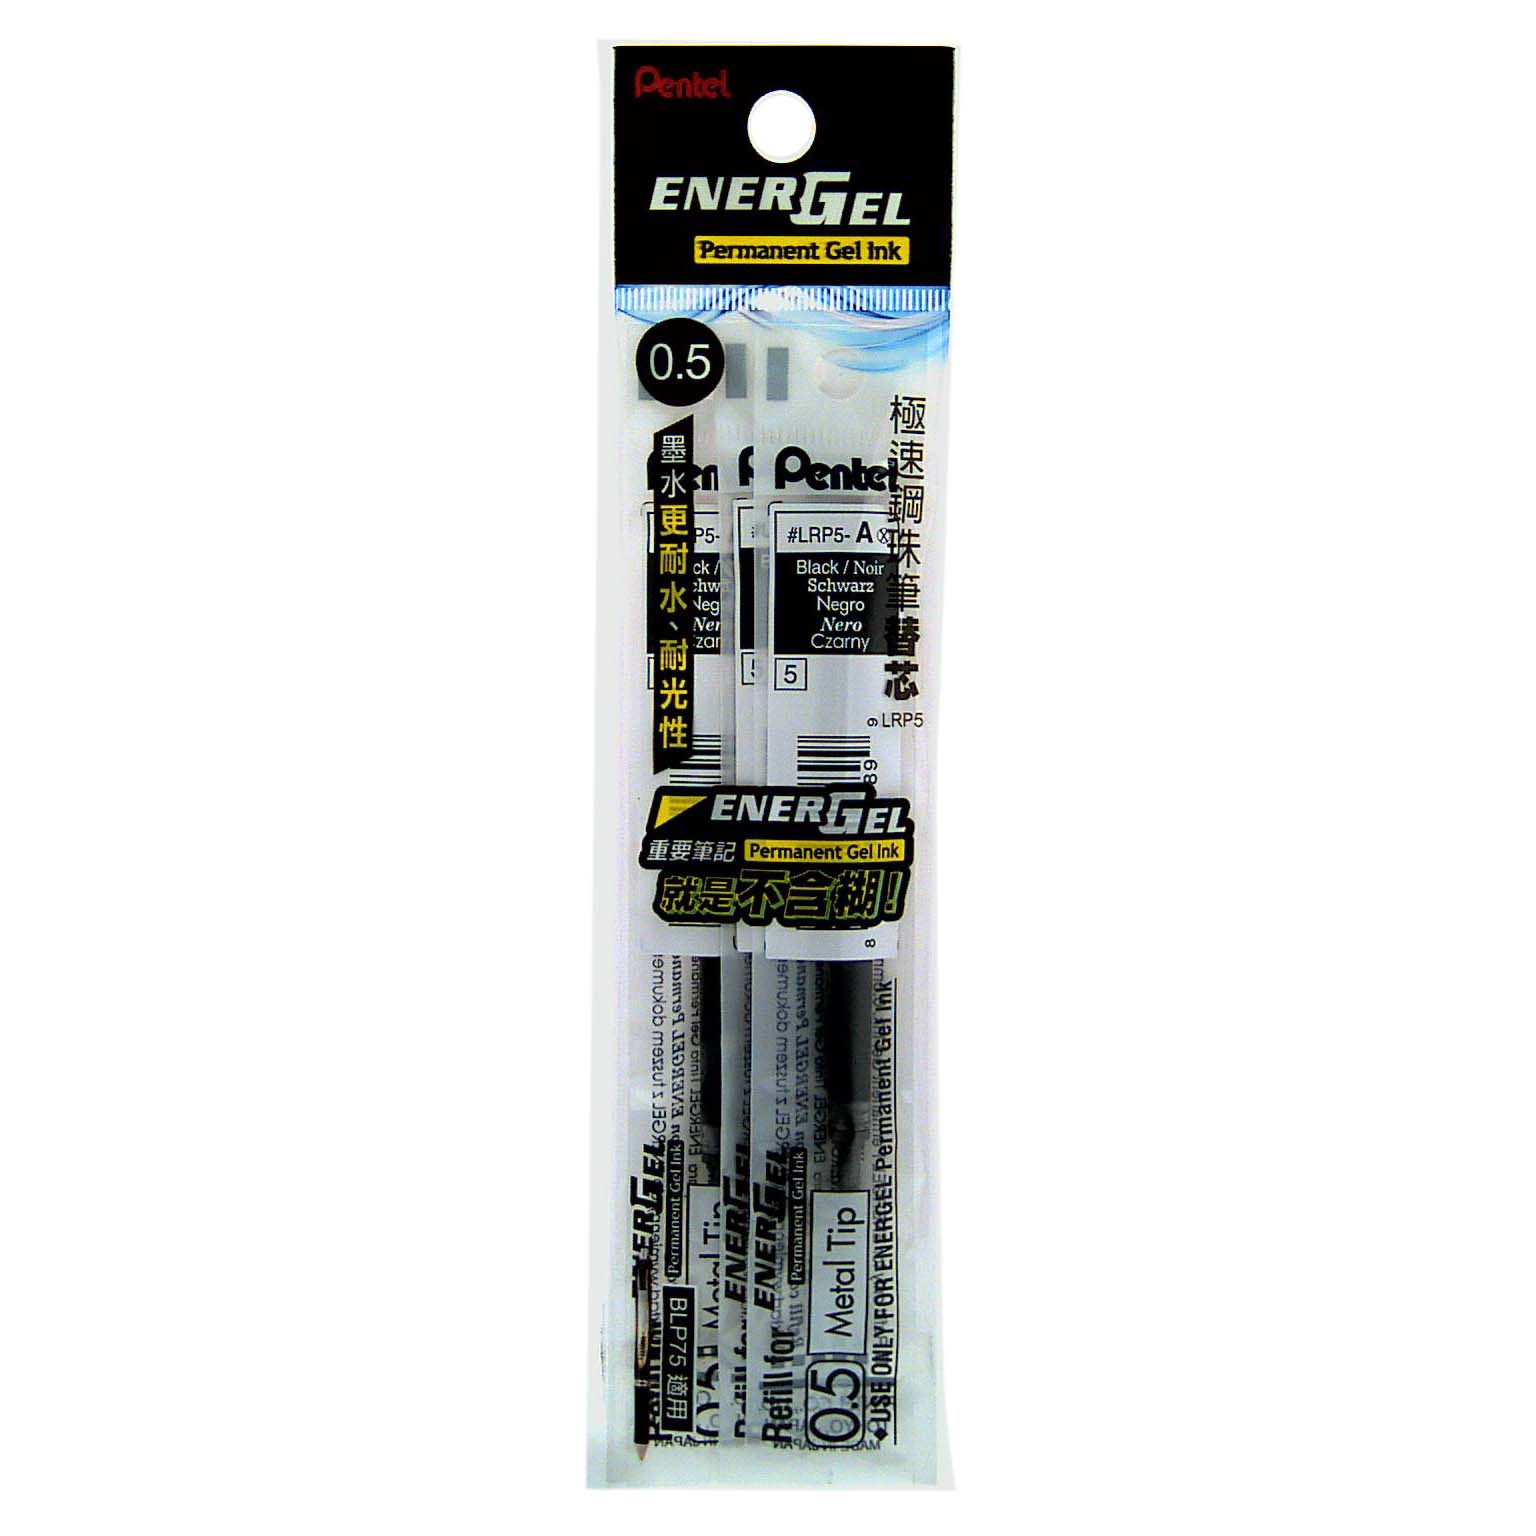 Pinball Pen Refill WPLRP5-AX3, , large